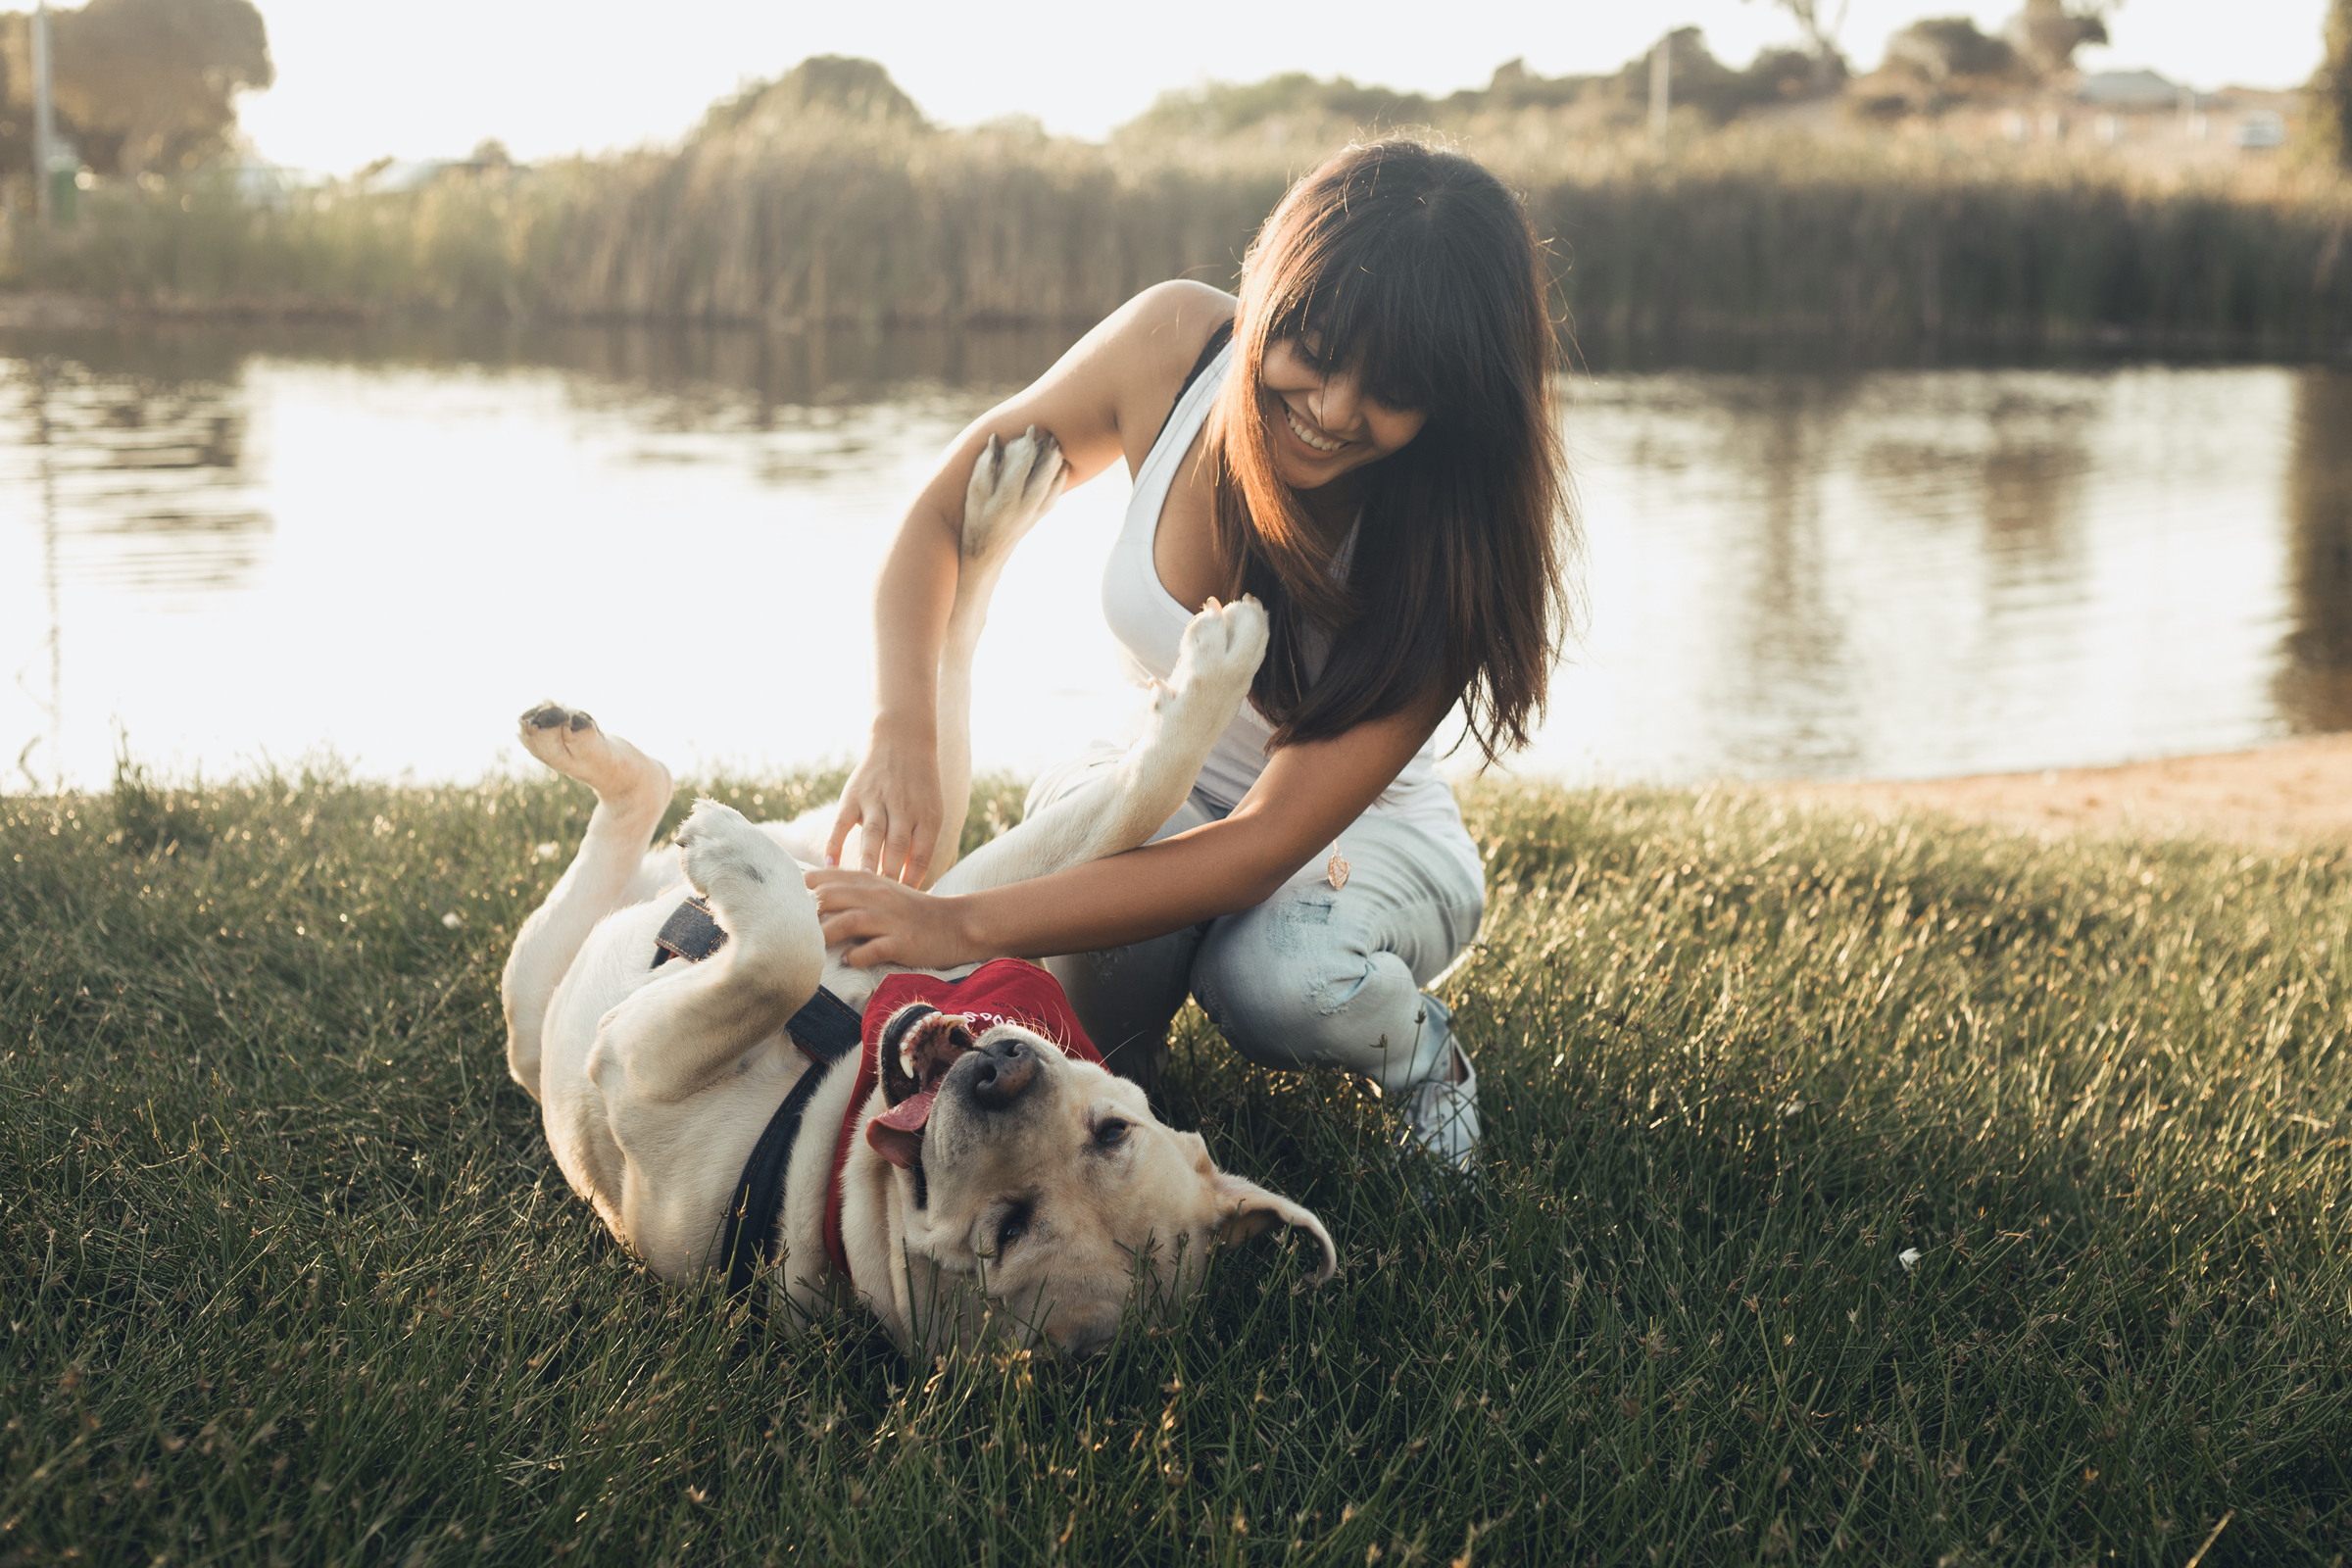 Картинка девушки с собакой. Девочка с собакой. Девушка с собакой на руках. Девушка с собакой на траве. Девушка и большая собака.